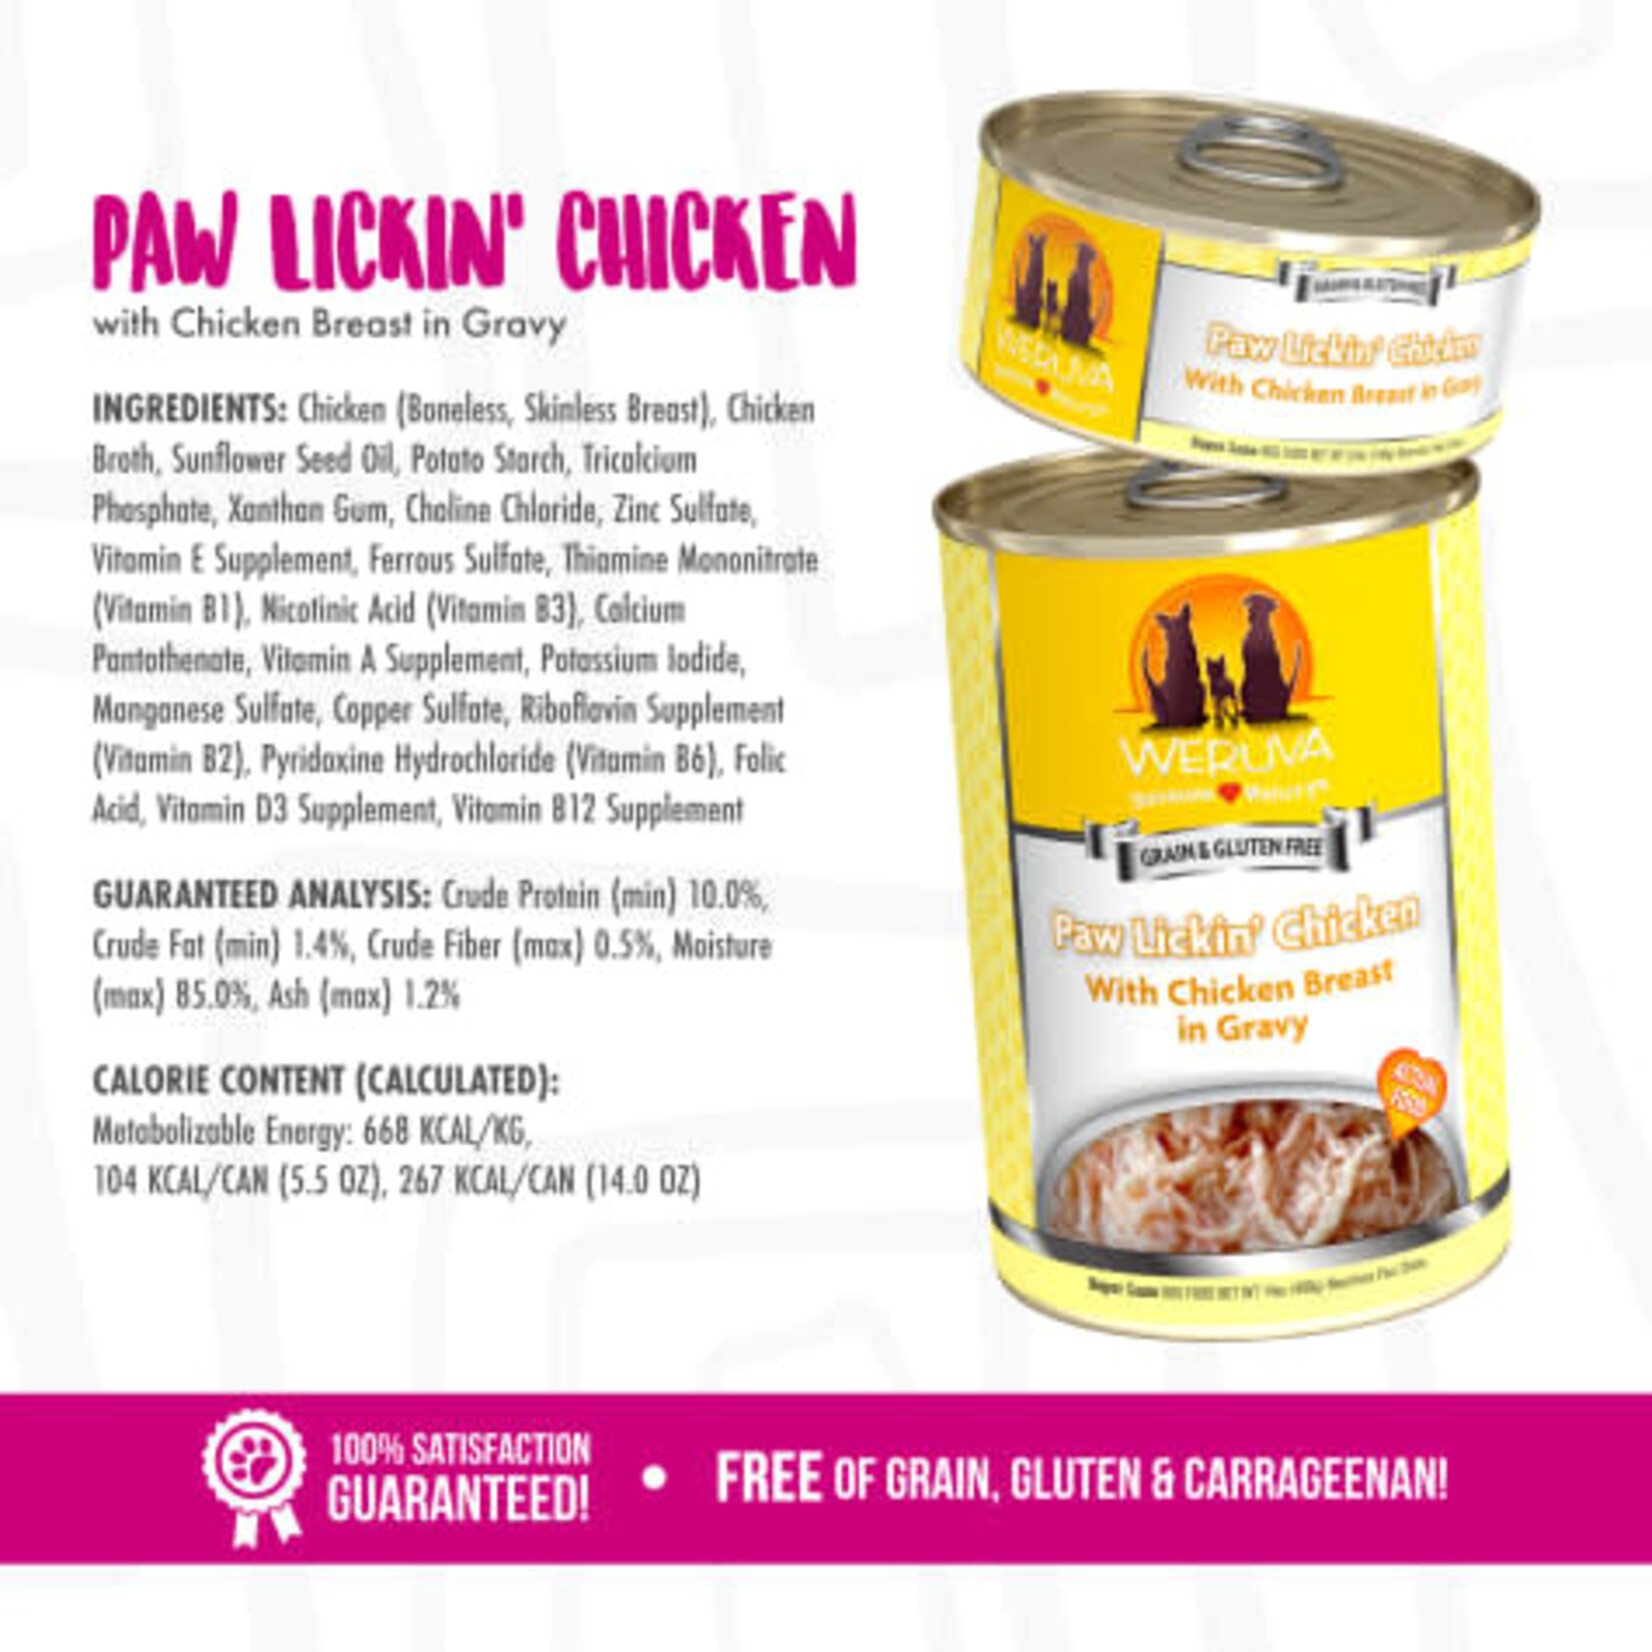 Weruva Paw Lickin' Chicken with Chicken Breast in Gravy Wet Dog Food